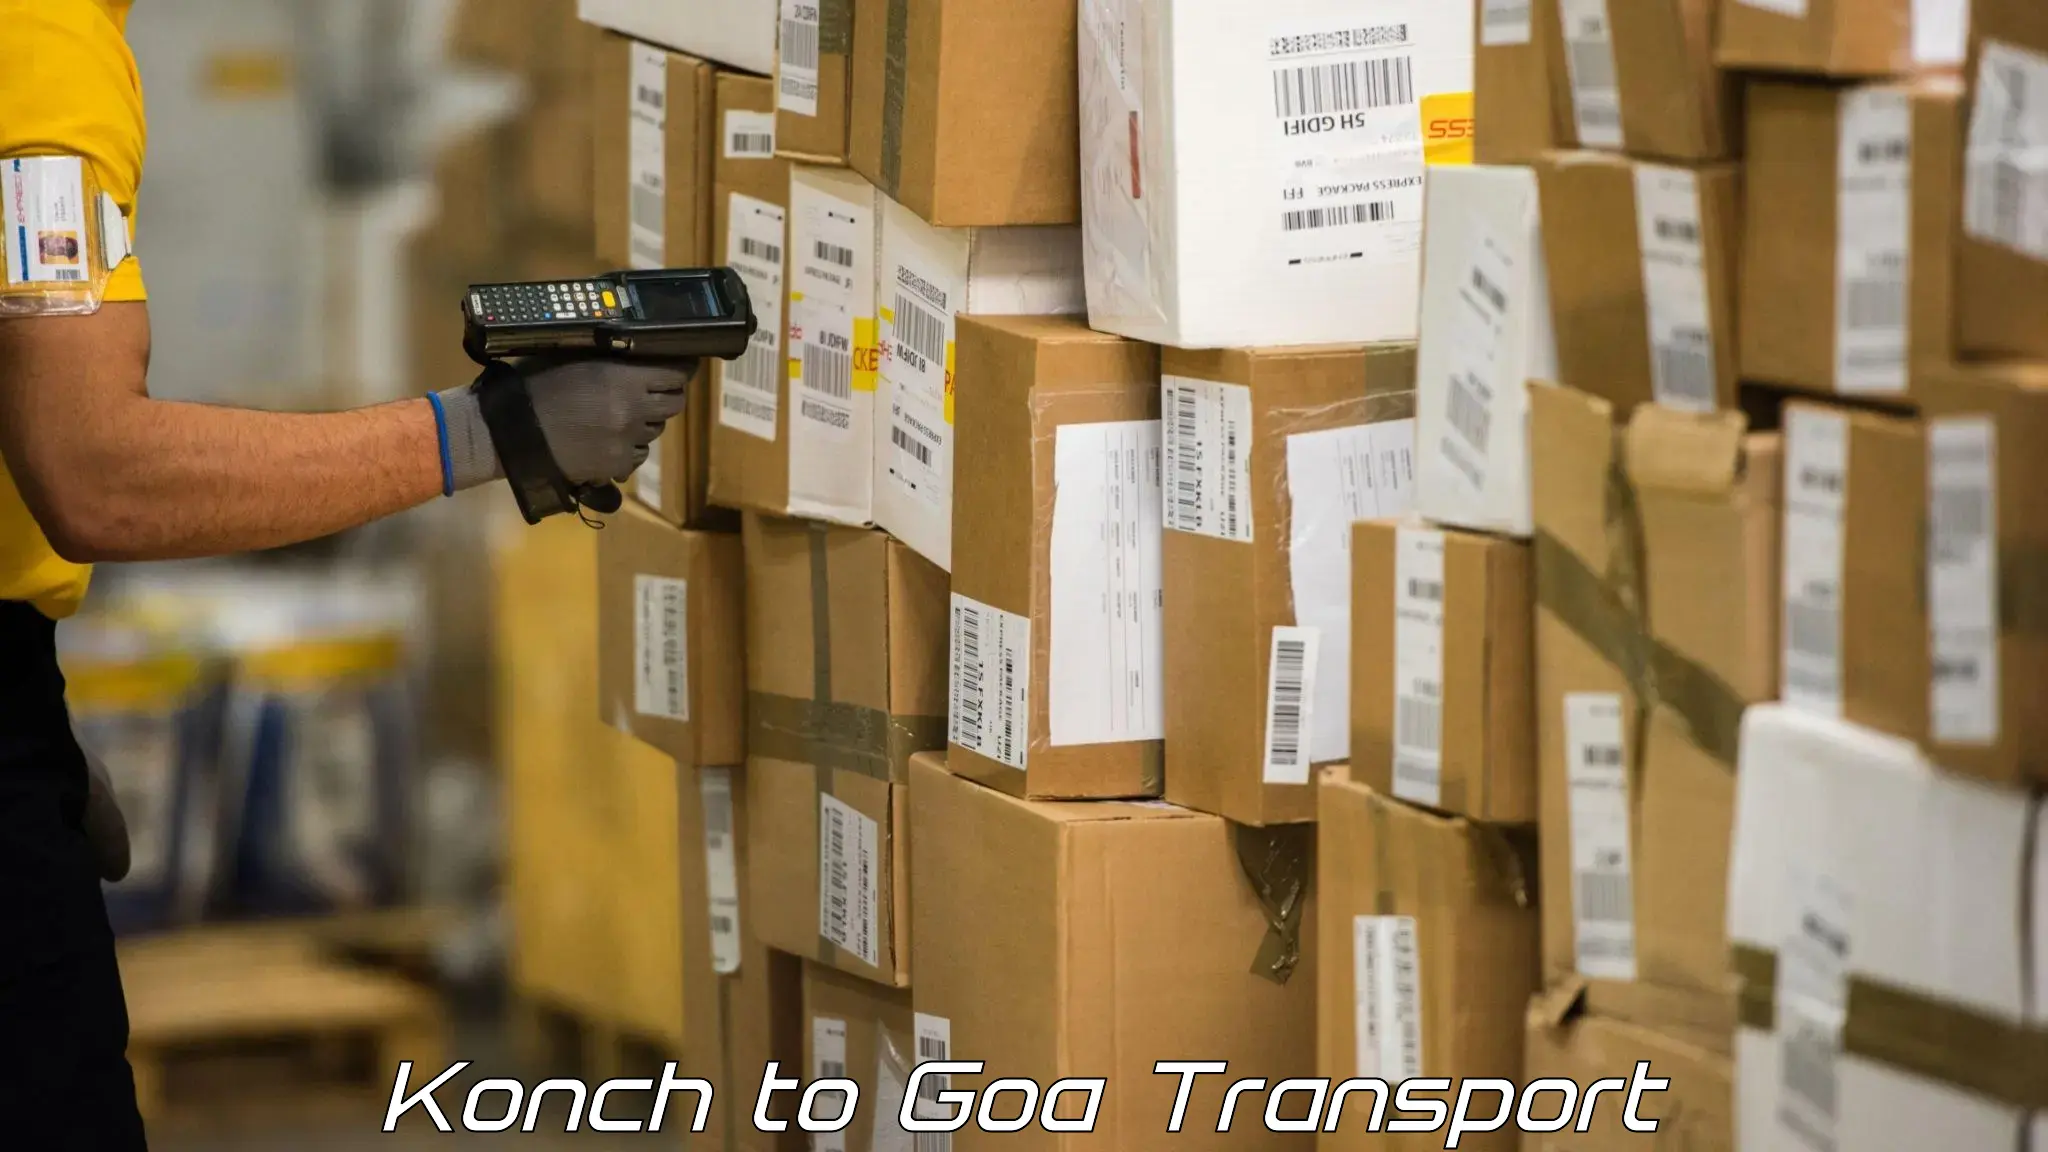 Two wheeler parcel service Konch to Goa